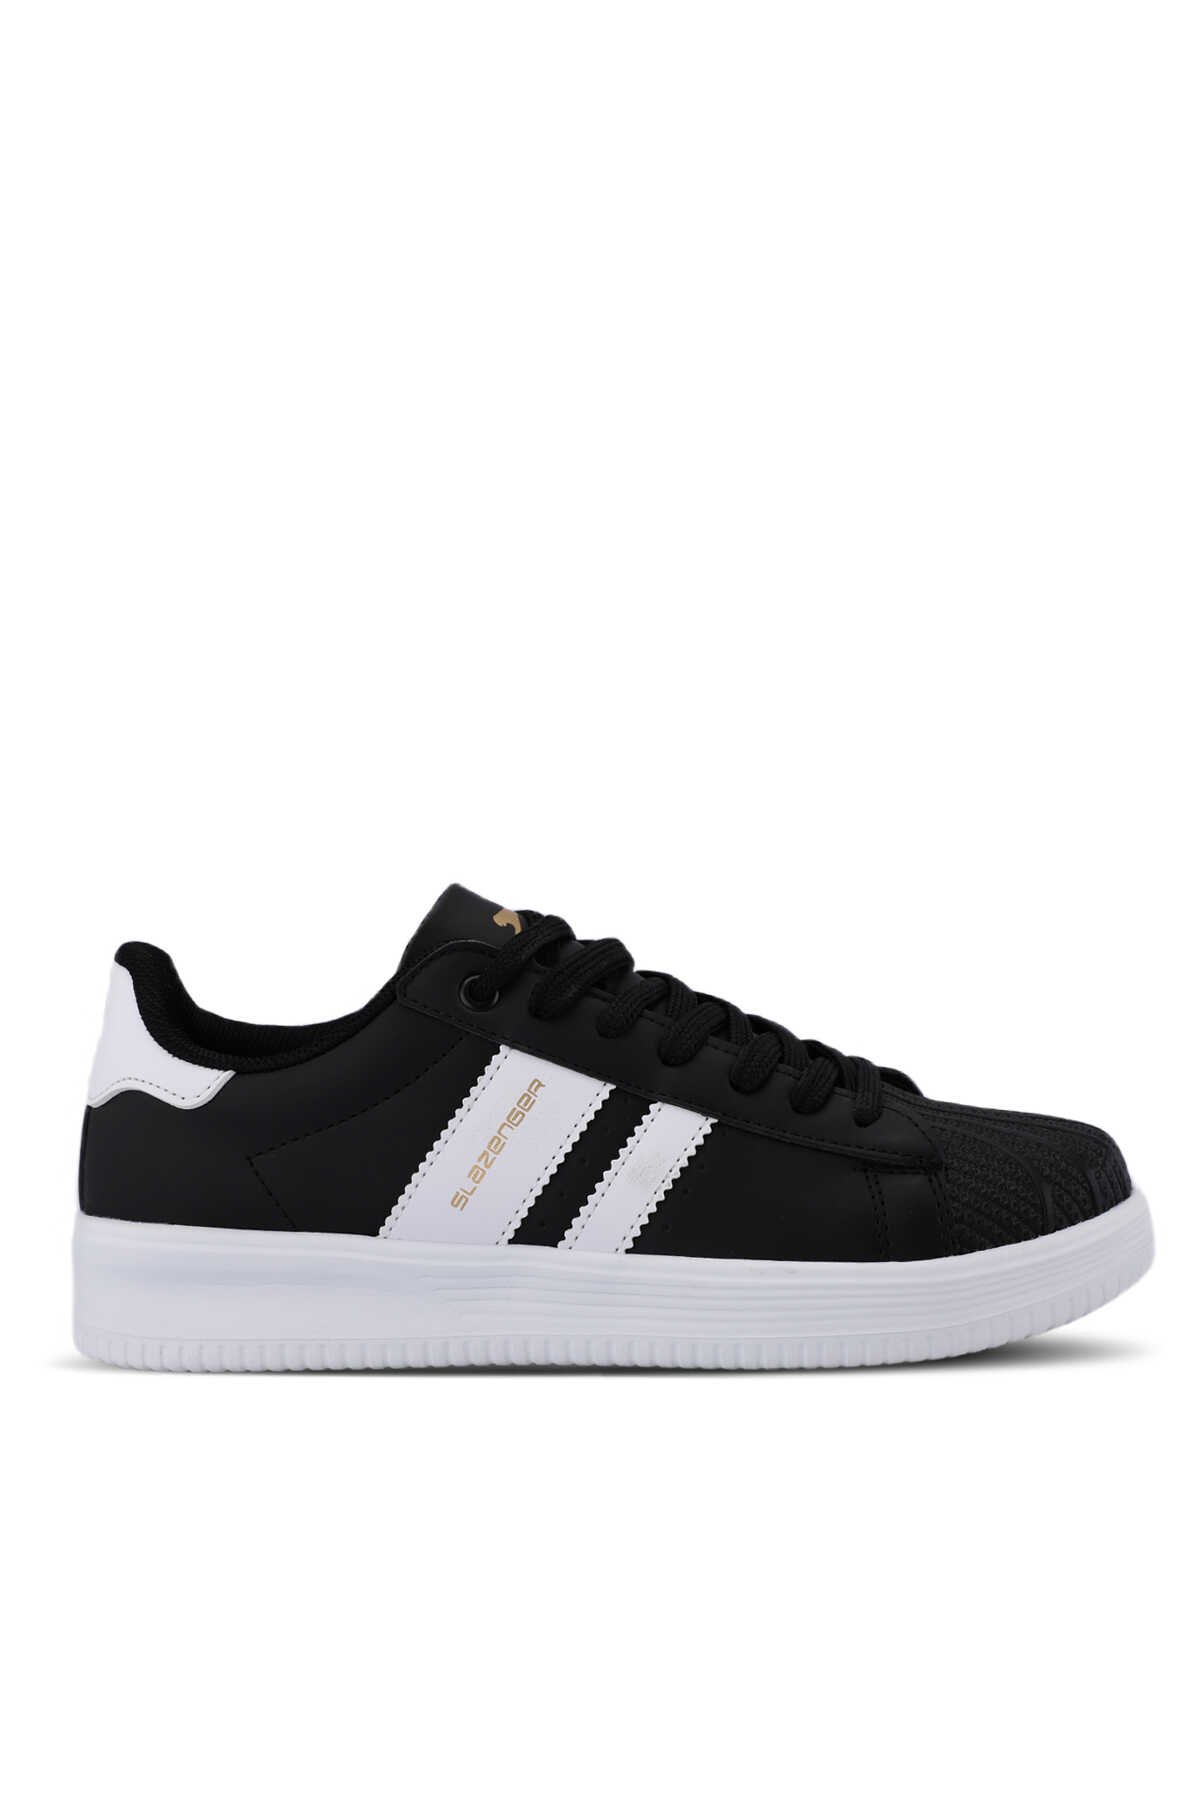 Slazenger - Slazenger ZENO Sneaker Erkek Ayakkabı Siyah / Beyaz